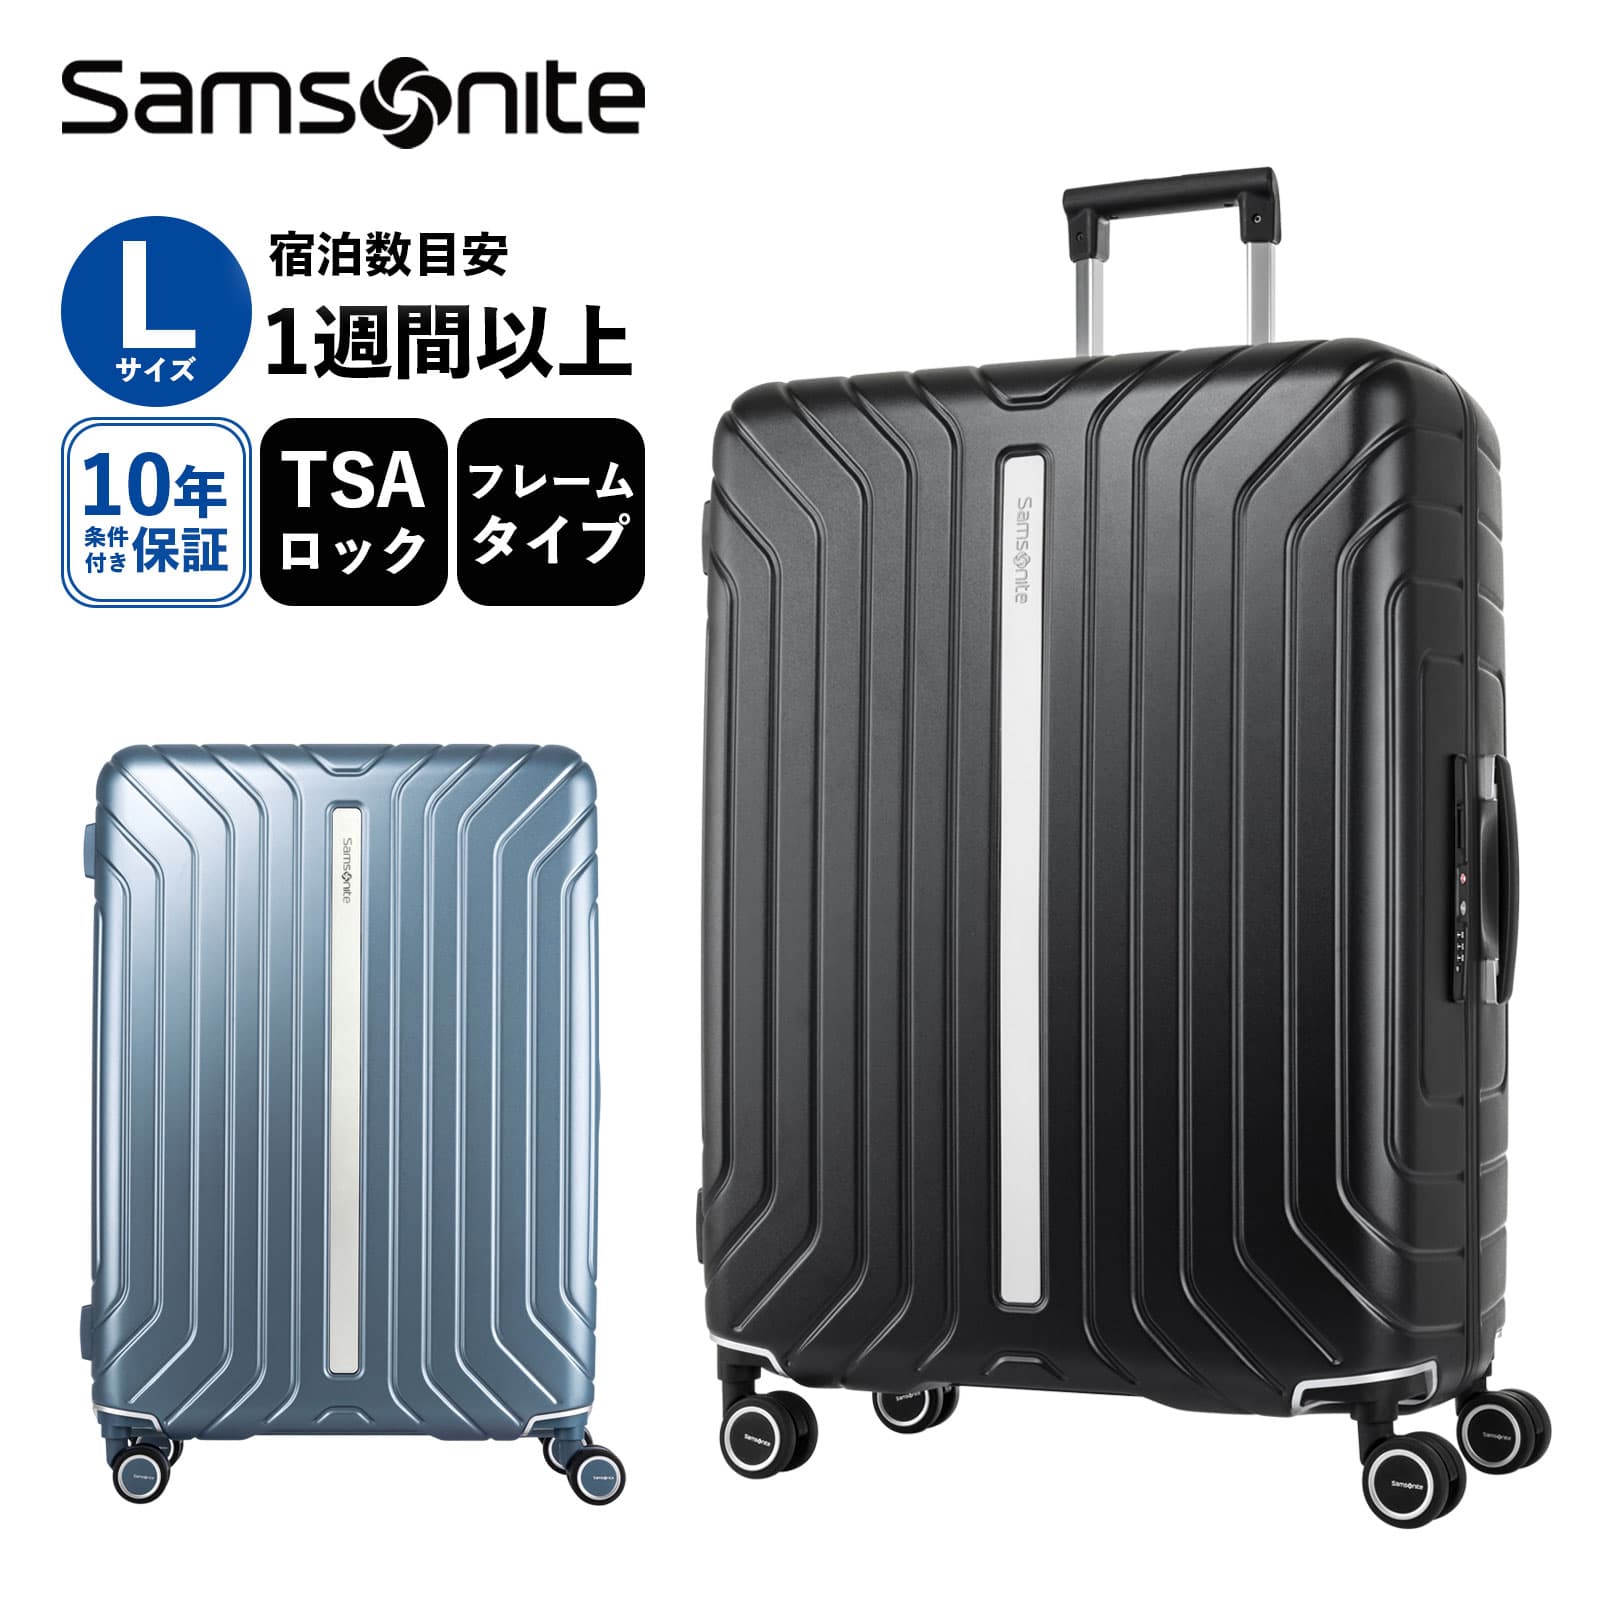 楽天Multiverse ANNEX正規品 サムソナイト Samsonite スーツケース Lサイズ キャリーバッグ キャリーケース ライトフレーム LITE-FRAME SPINNER 75/28 ハードケース メンズ レディース 1週間以上 TSA 大容量 軽量 ブランド ブラック